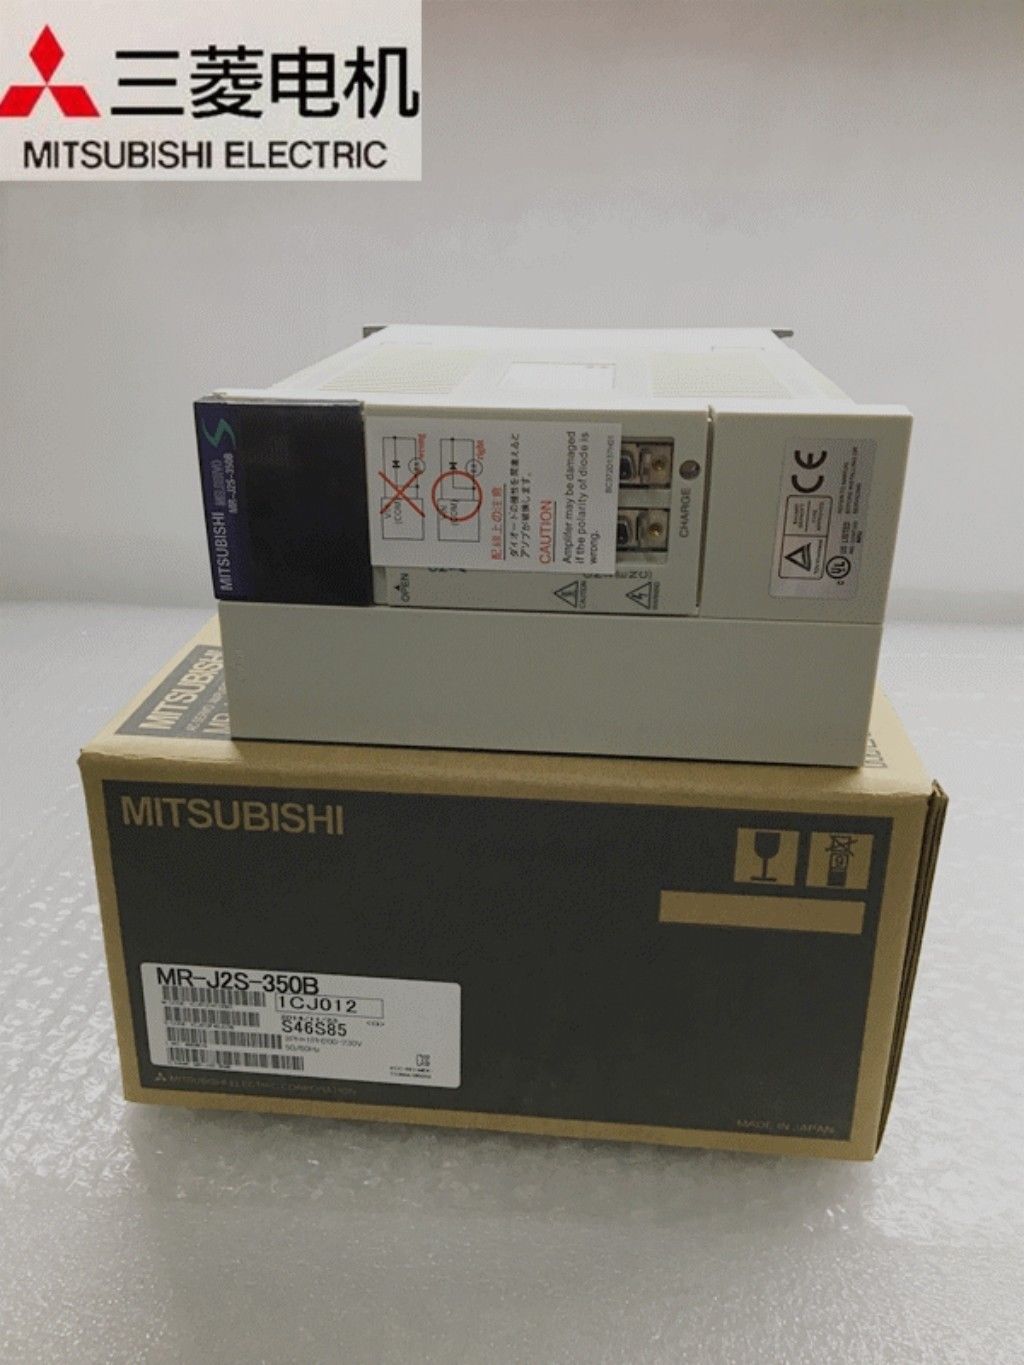 NEW Mitsubishi Servo Drive MR-J2S-350B in box MRJ2S350B